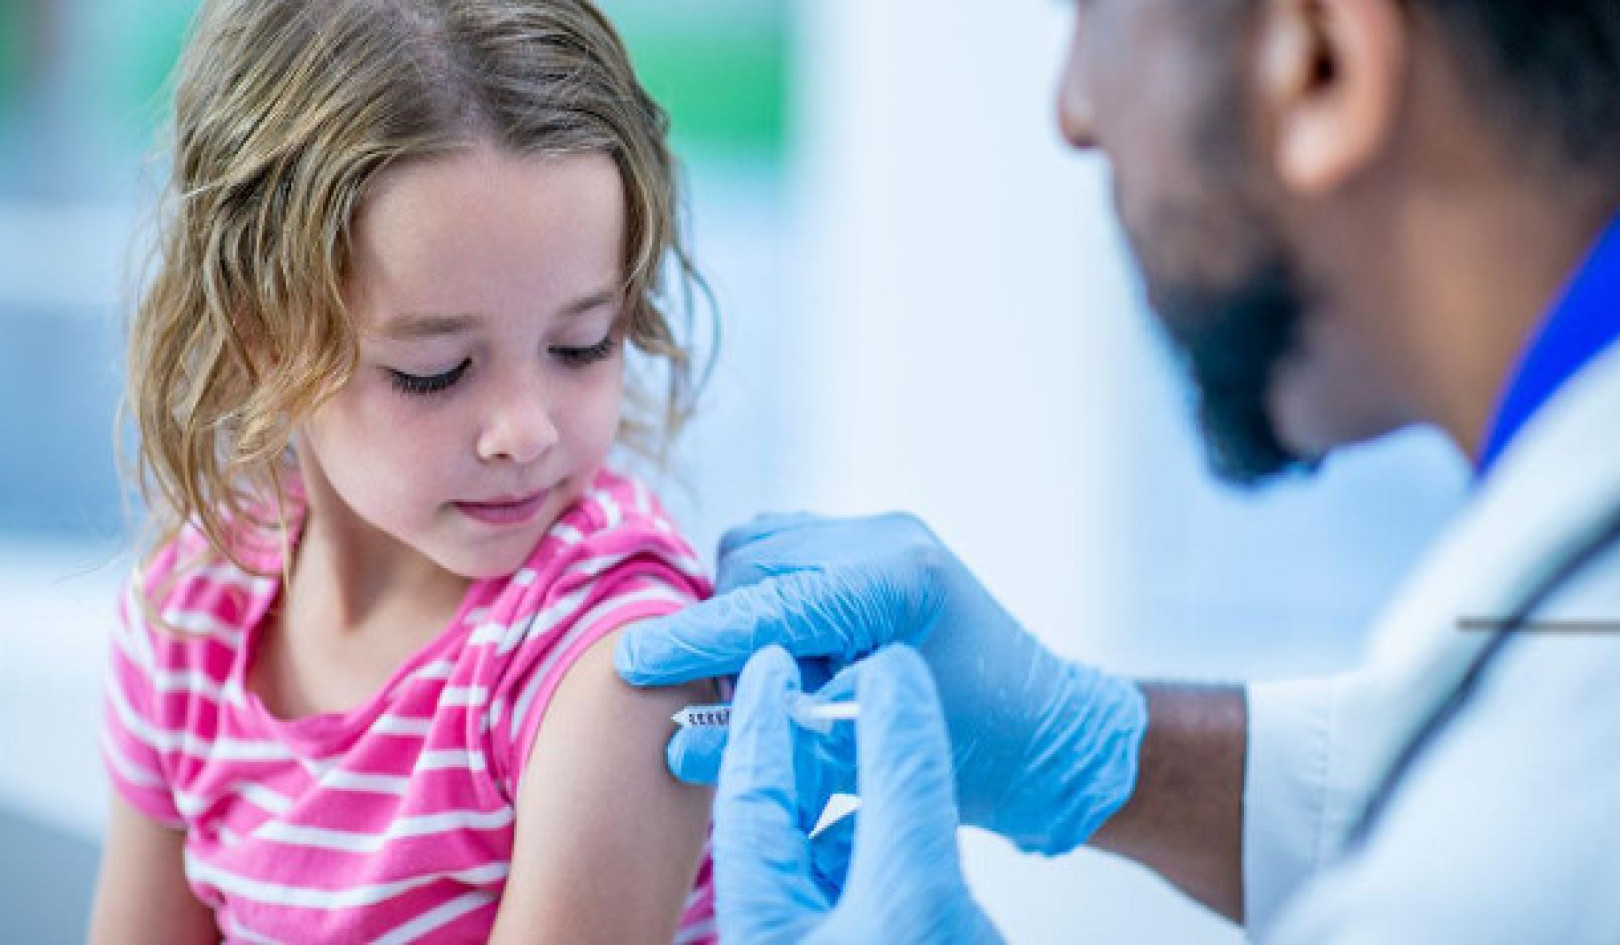 टीकाकरण में अमेरिका के घटते विश्वास को समझना